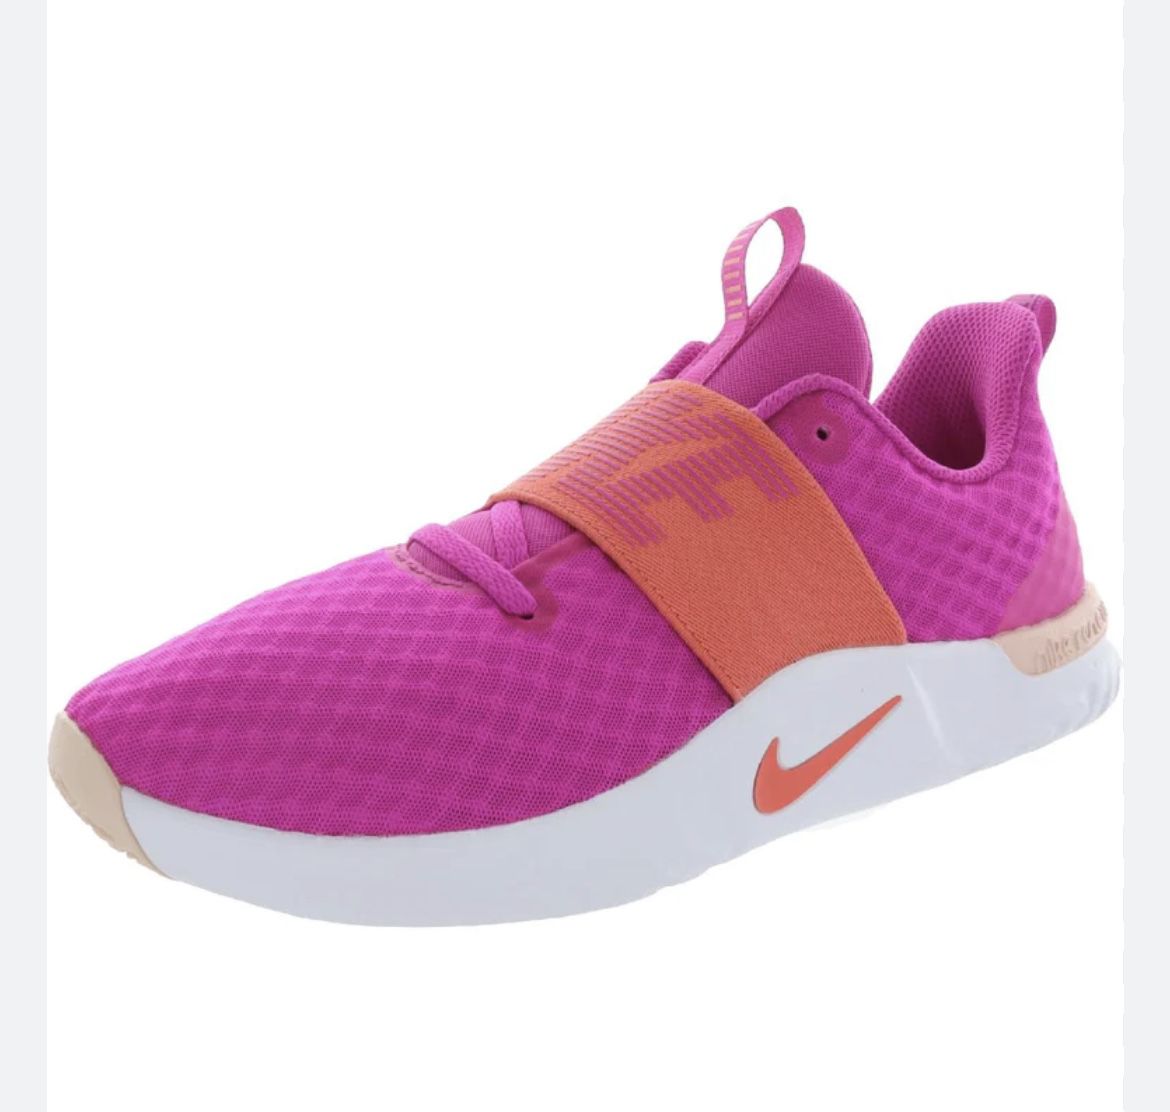 Nike Women’s Running Shoes